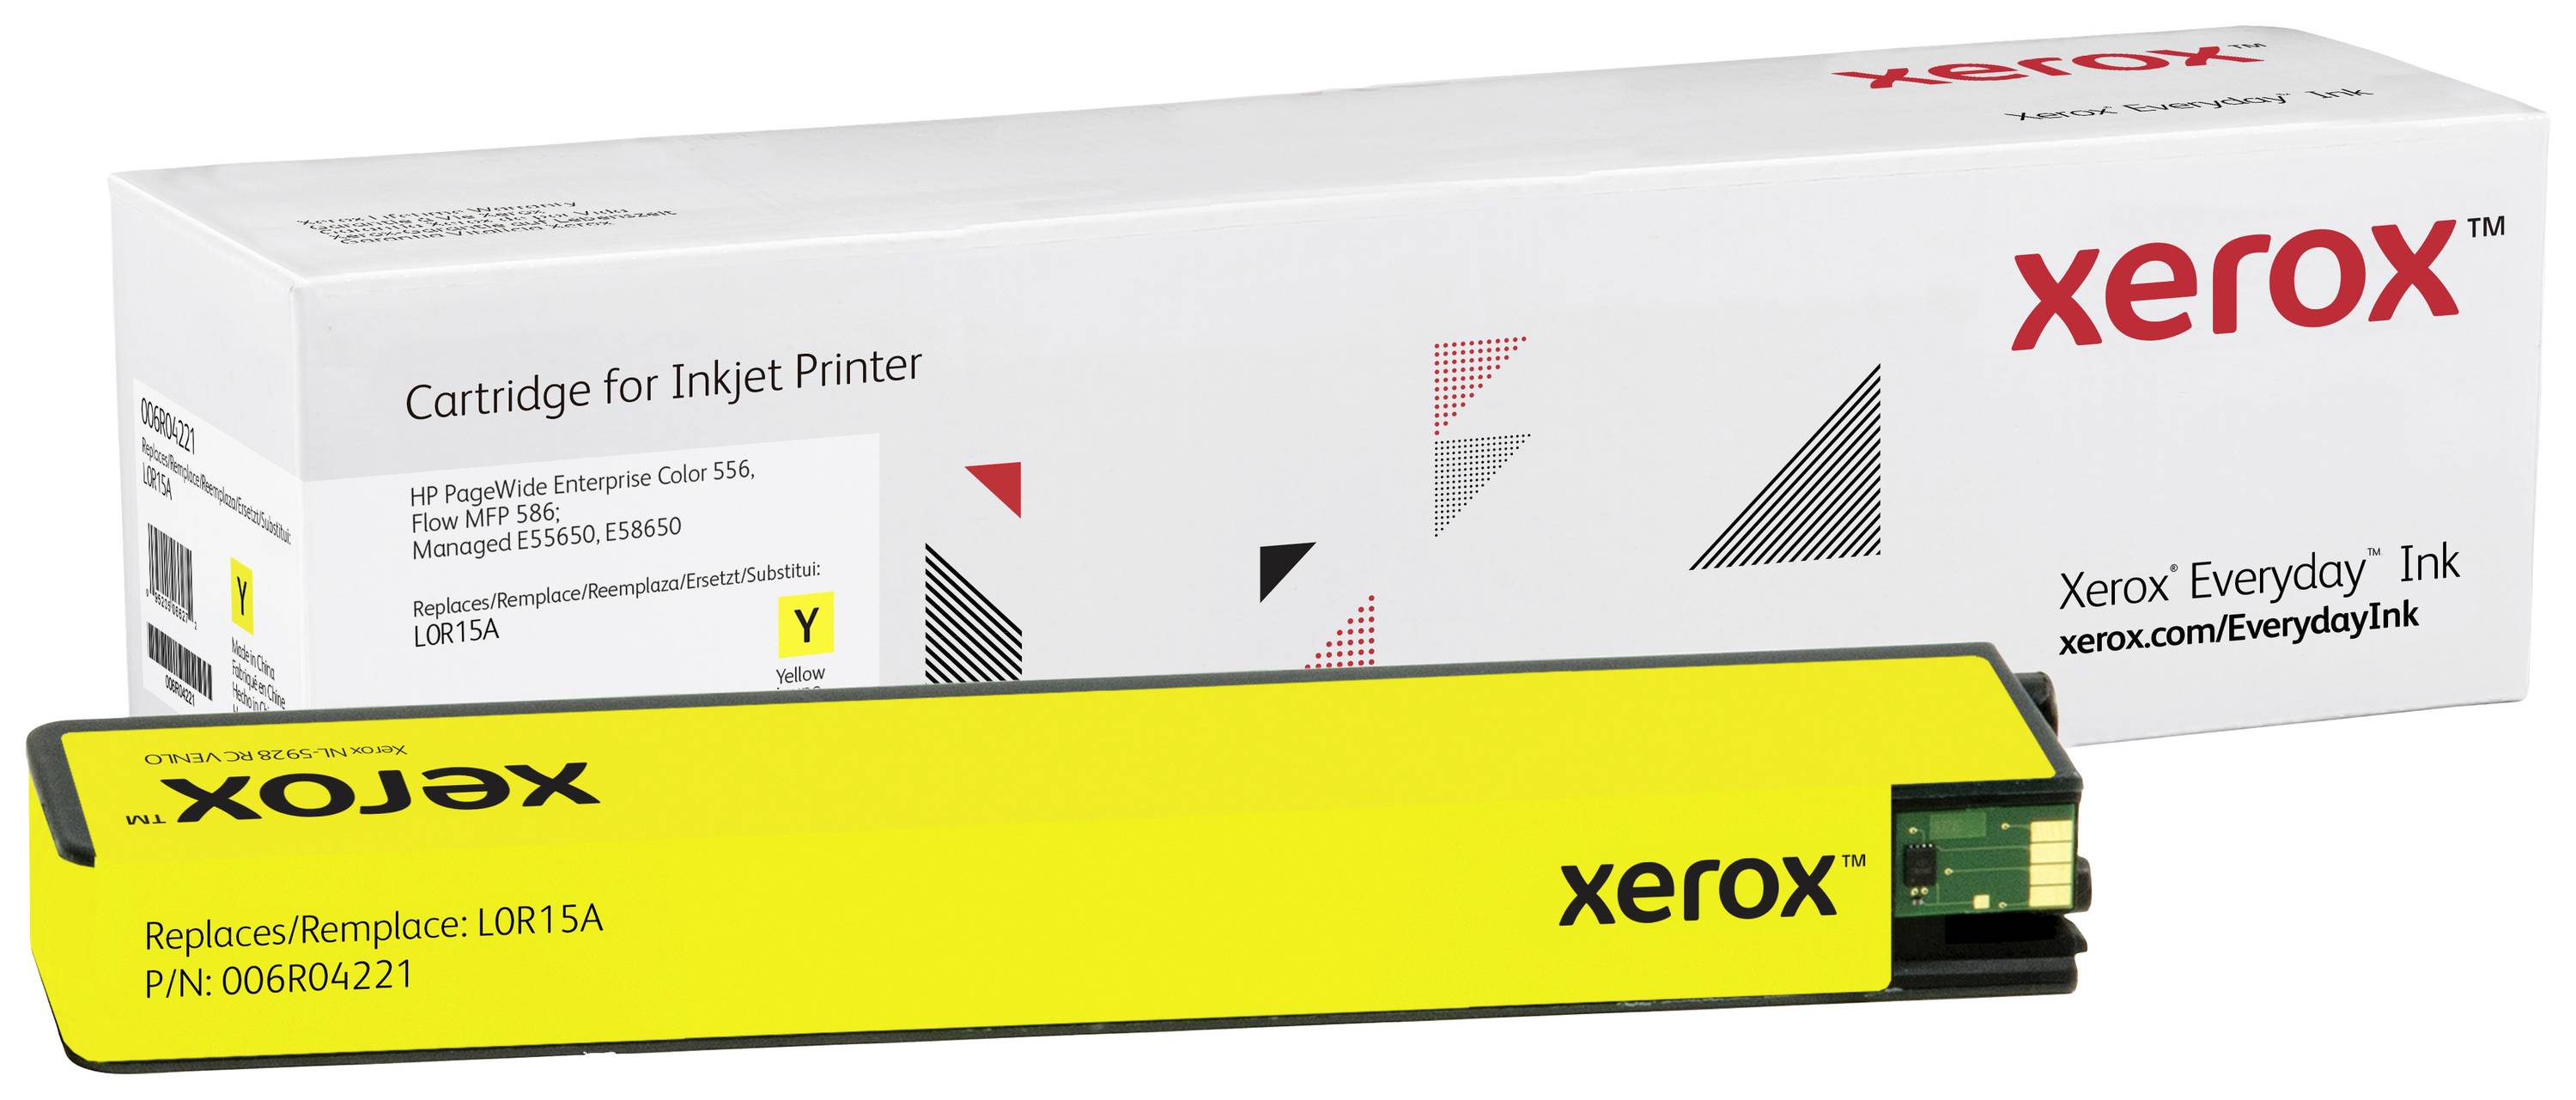 XEROX Everyday - Hohe Ergiebigkeit - Gelb - kompatibel - Tonerpatrone - für HP PageWide Enterprise C